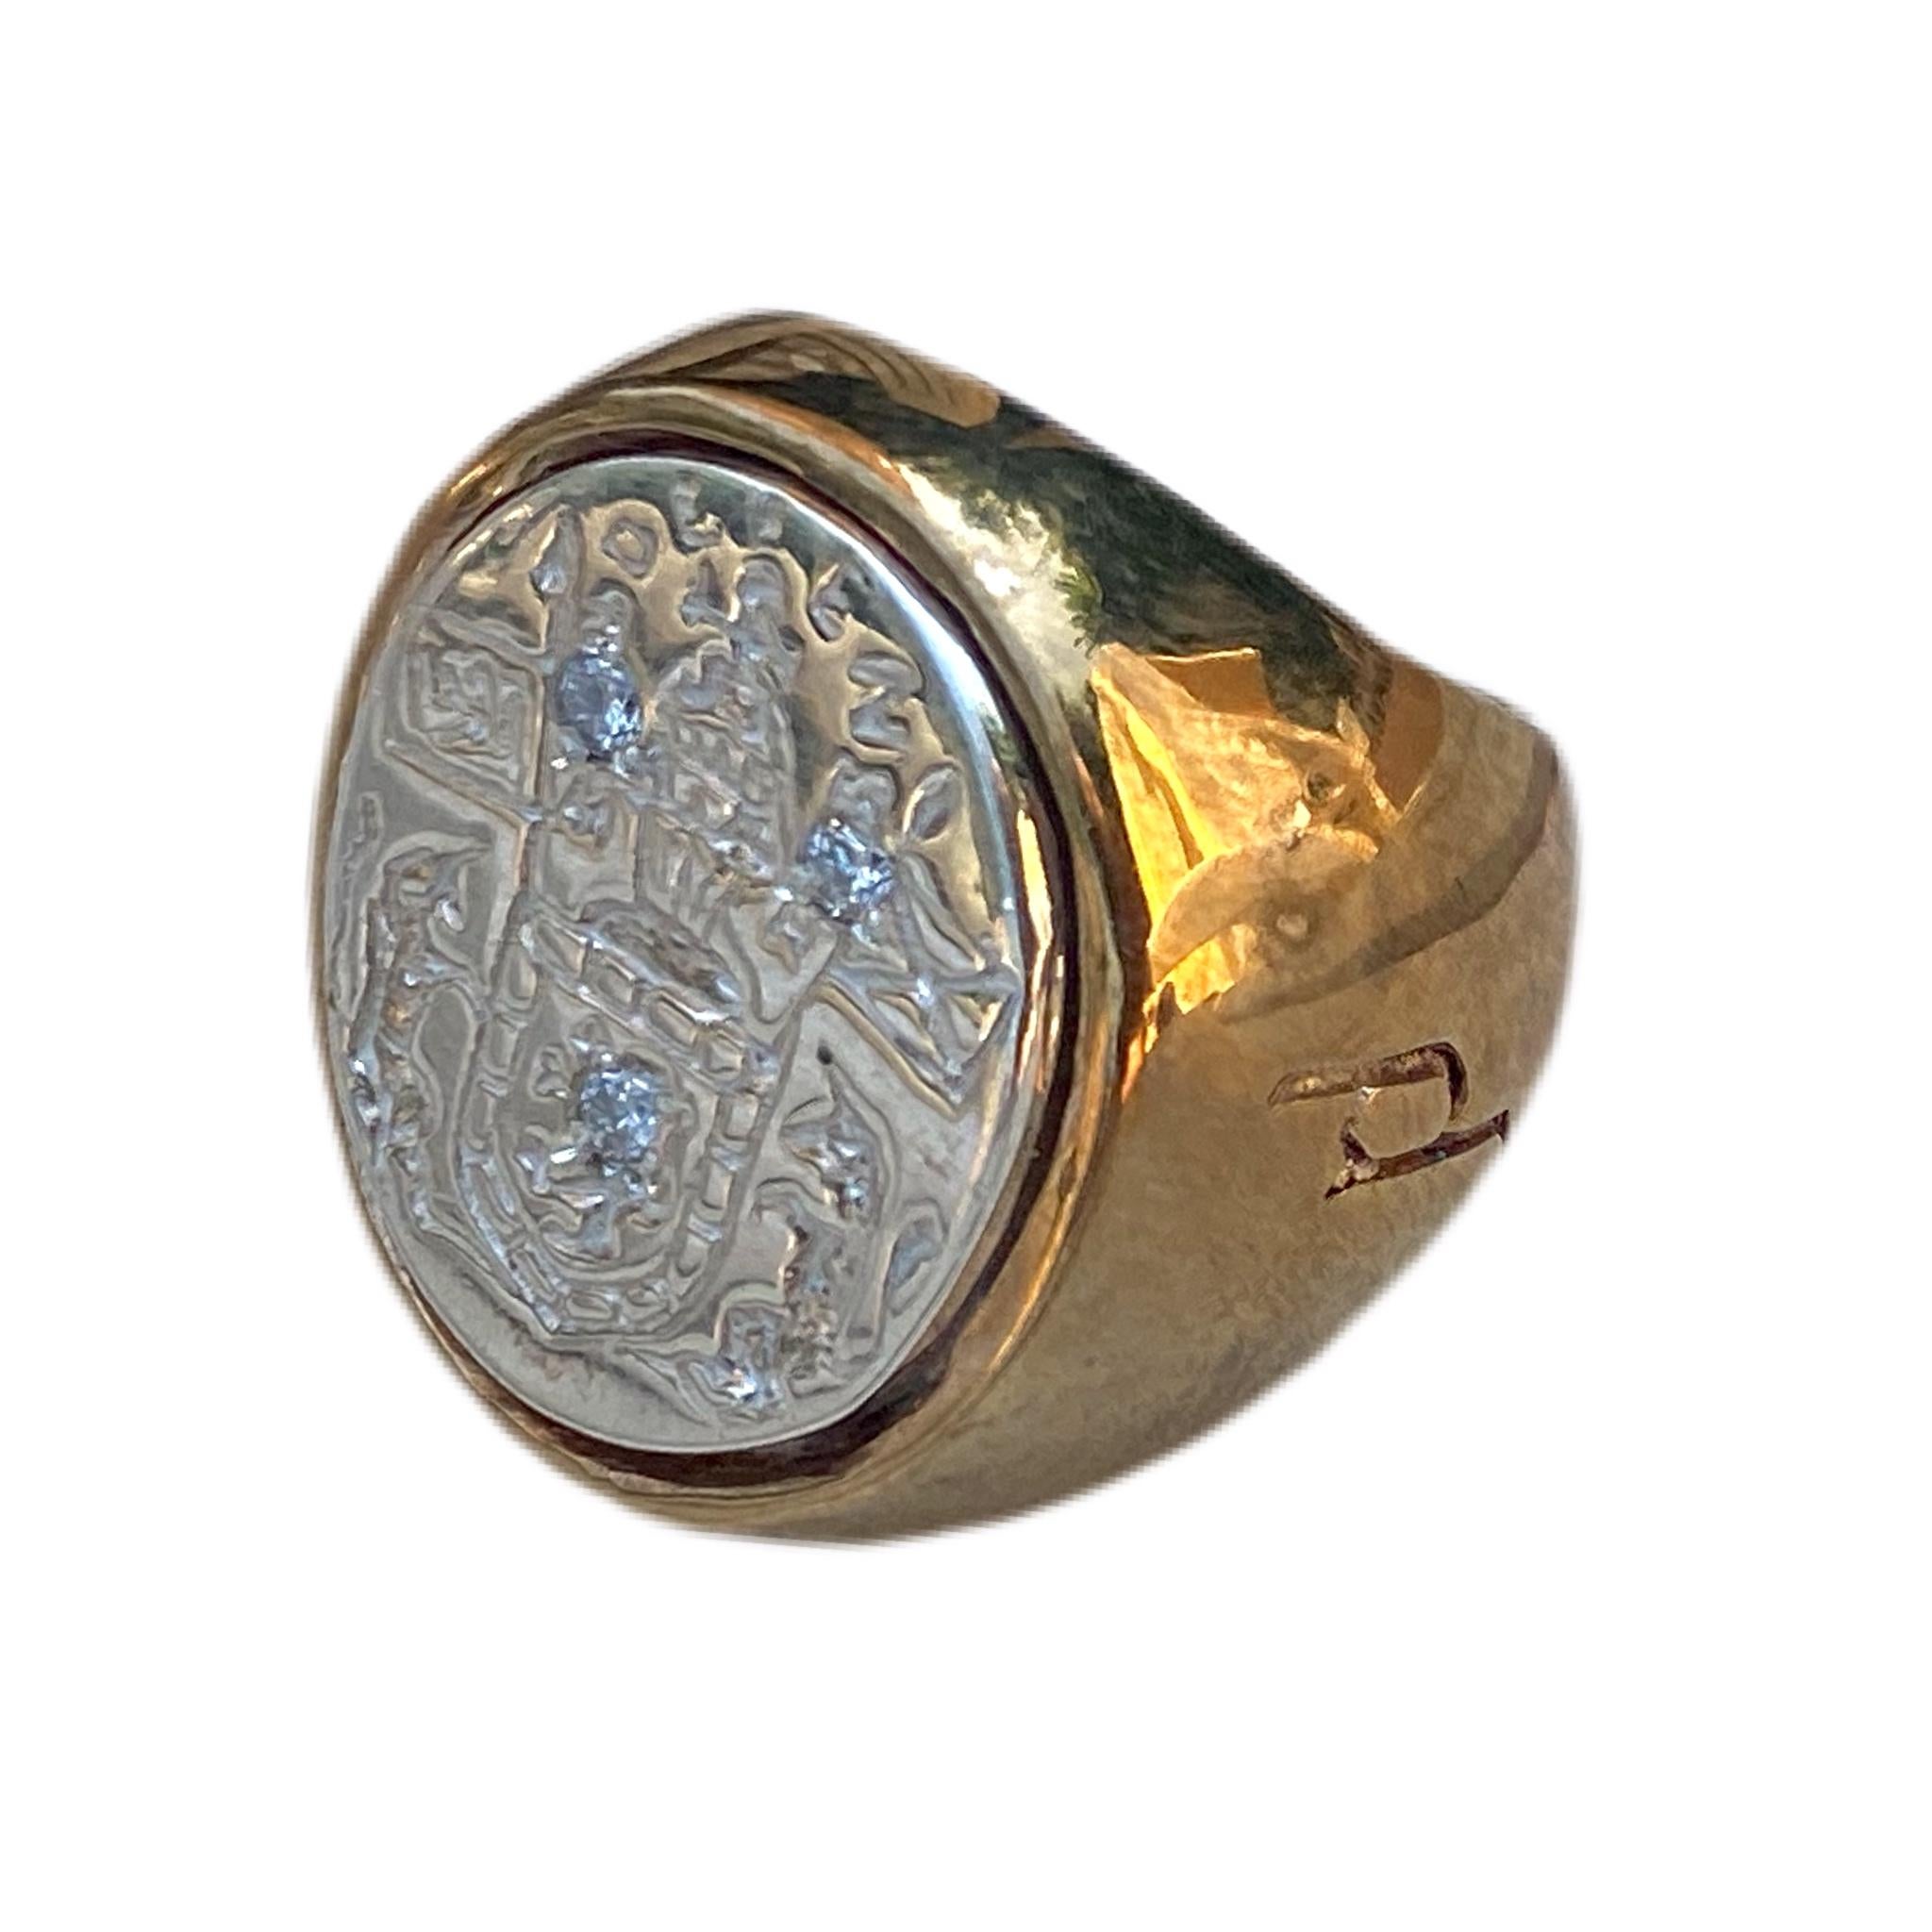 3 Stück Sapphire Crest Signet Ring Sterling Silber Bronze J Dauphin kann von Frauen oder Männern getragen werden.

Inspiriert durch den Ring der Königin Maria von Schottland. Goldener Siegelring; graviert; Schultern mit Blumen und Blättern verziert.